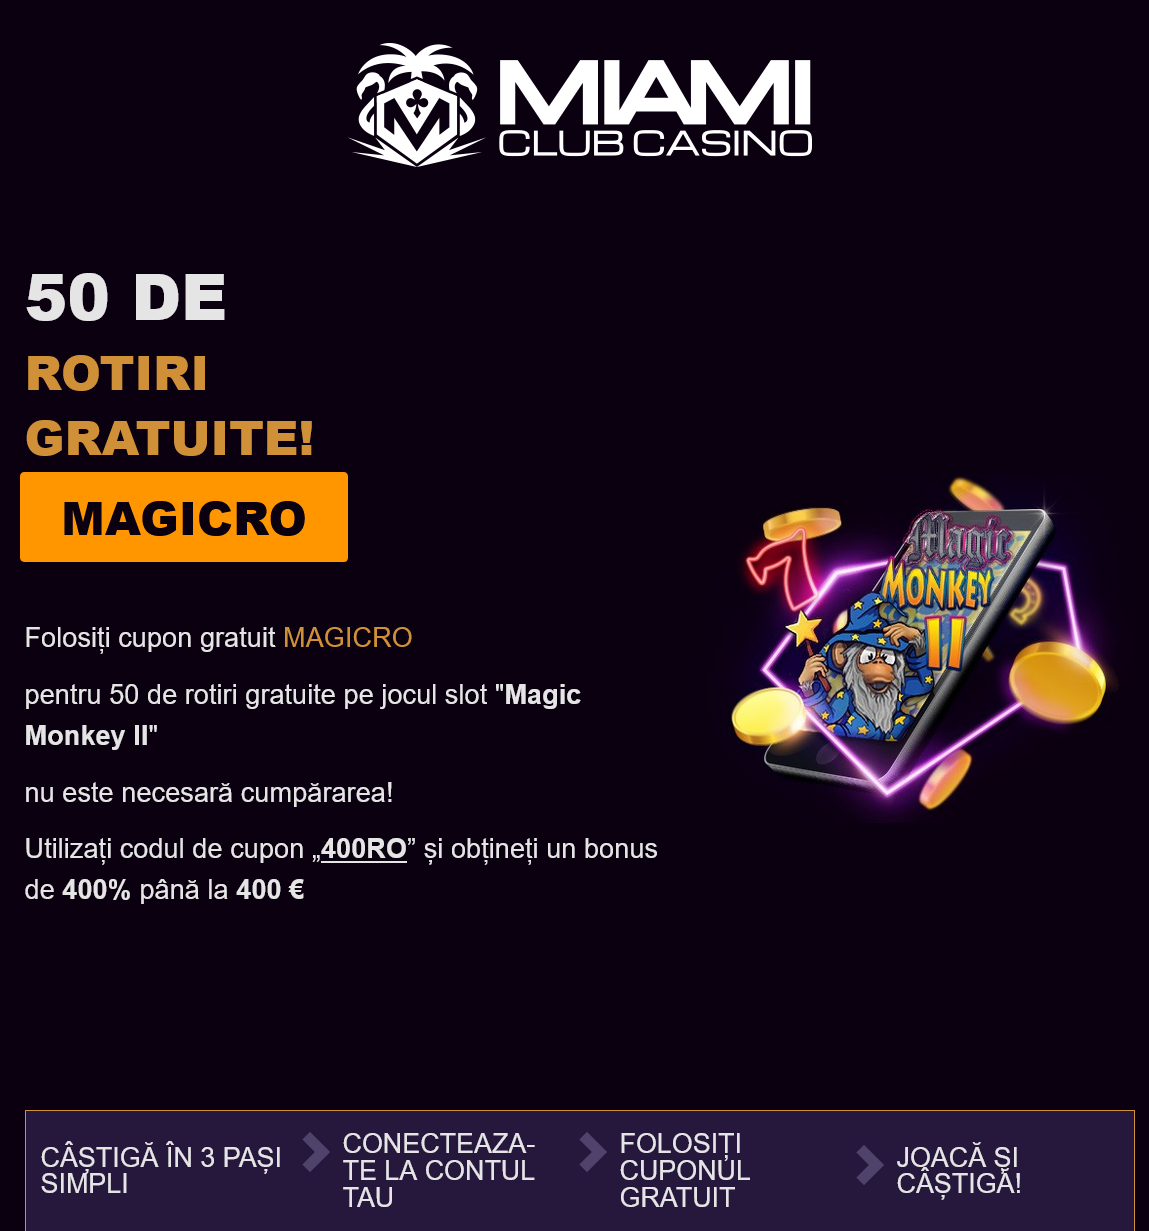 Miami Club 50 Free Spins